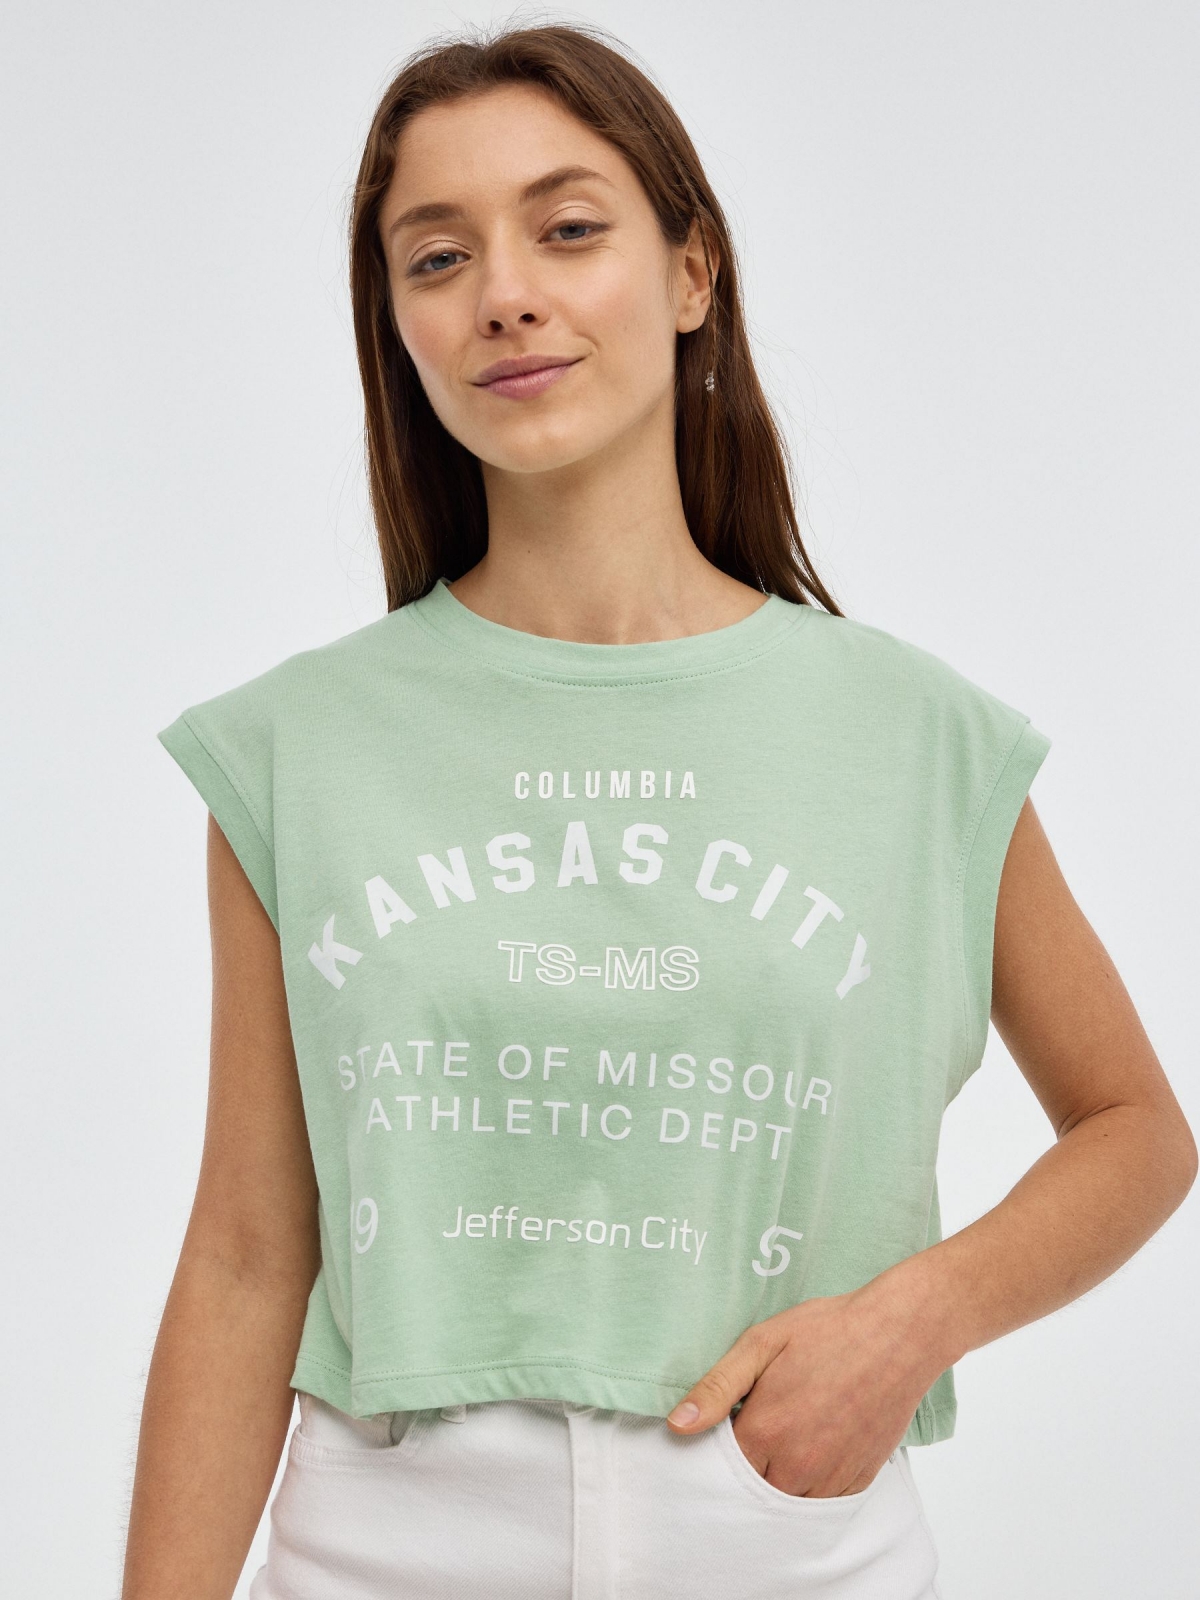 T-Shirt de Kansas City verde claro vista meia frontal